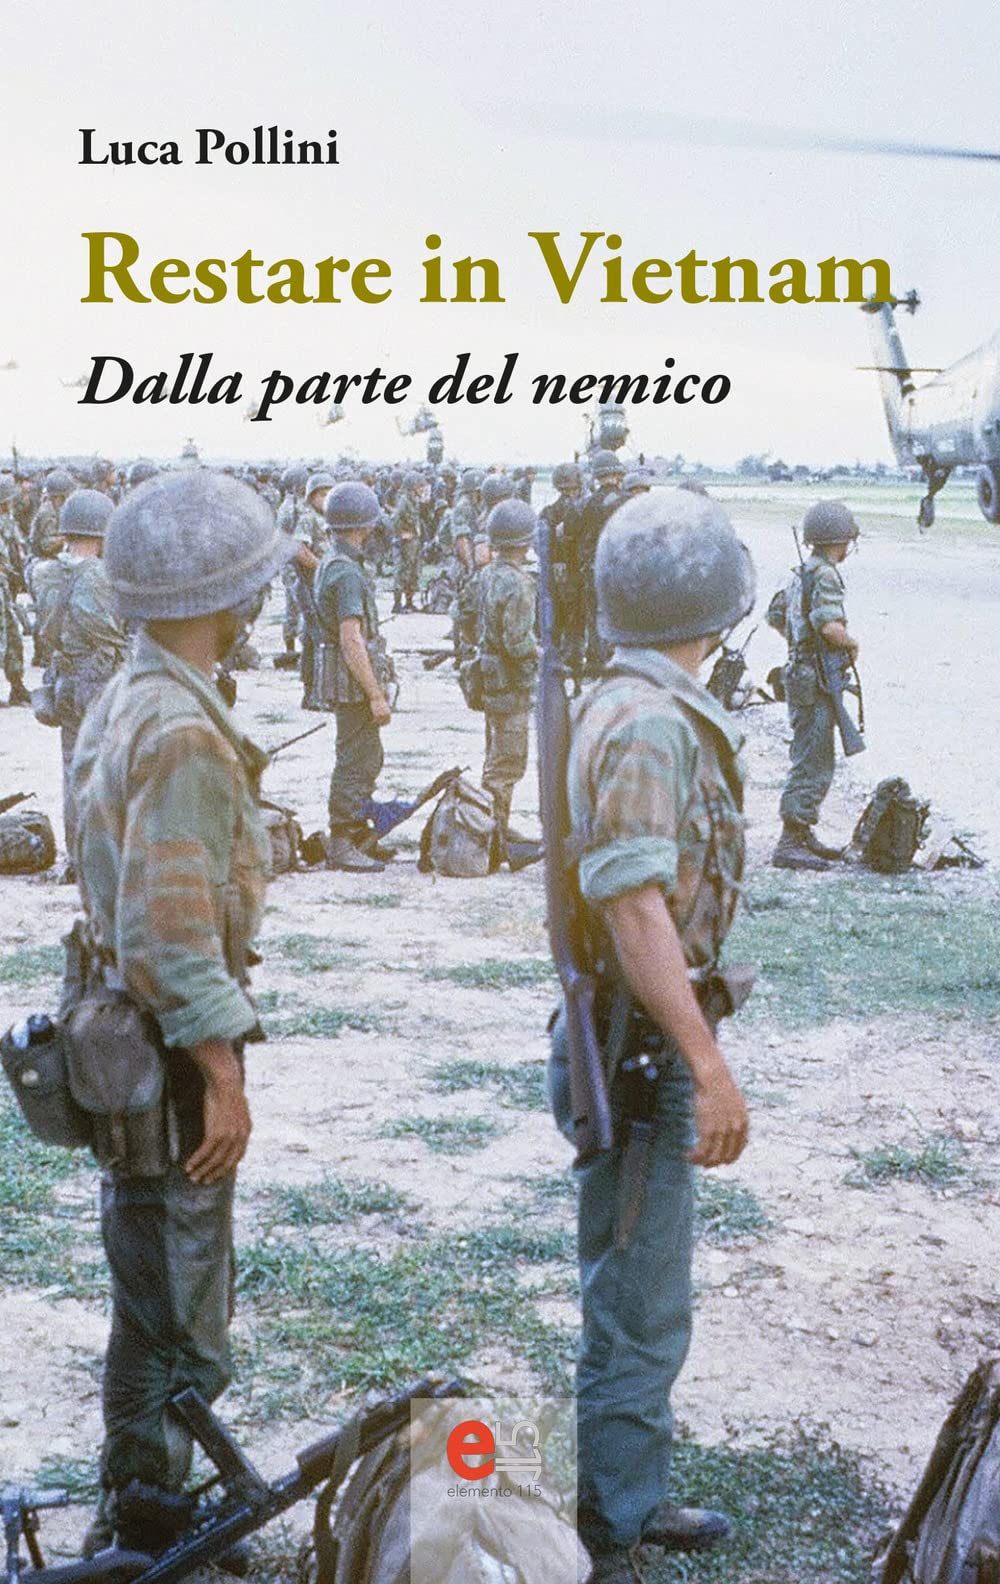 ‘Restare in Vietnam. Dalla parte del nemico’, il libro-intervista senza filtri di Luca Pollini